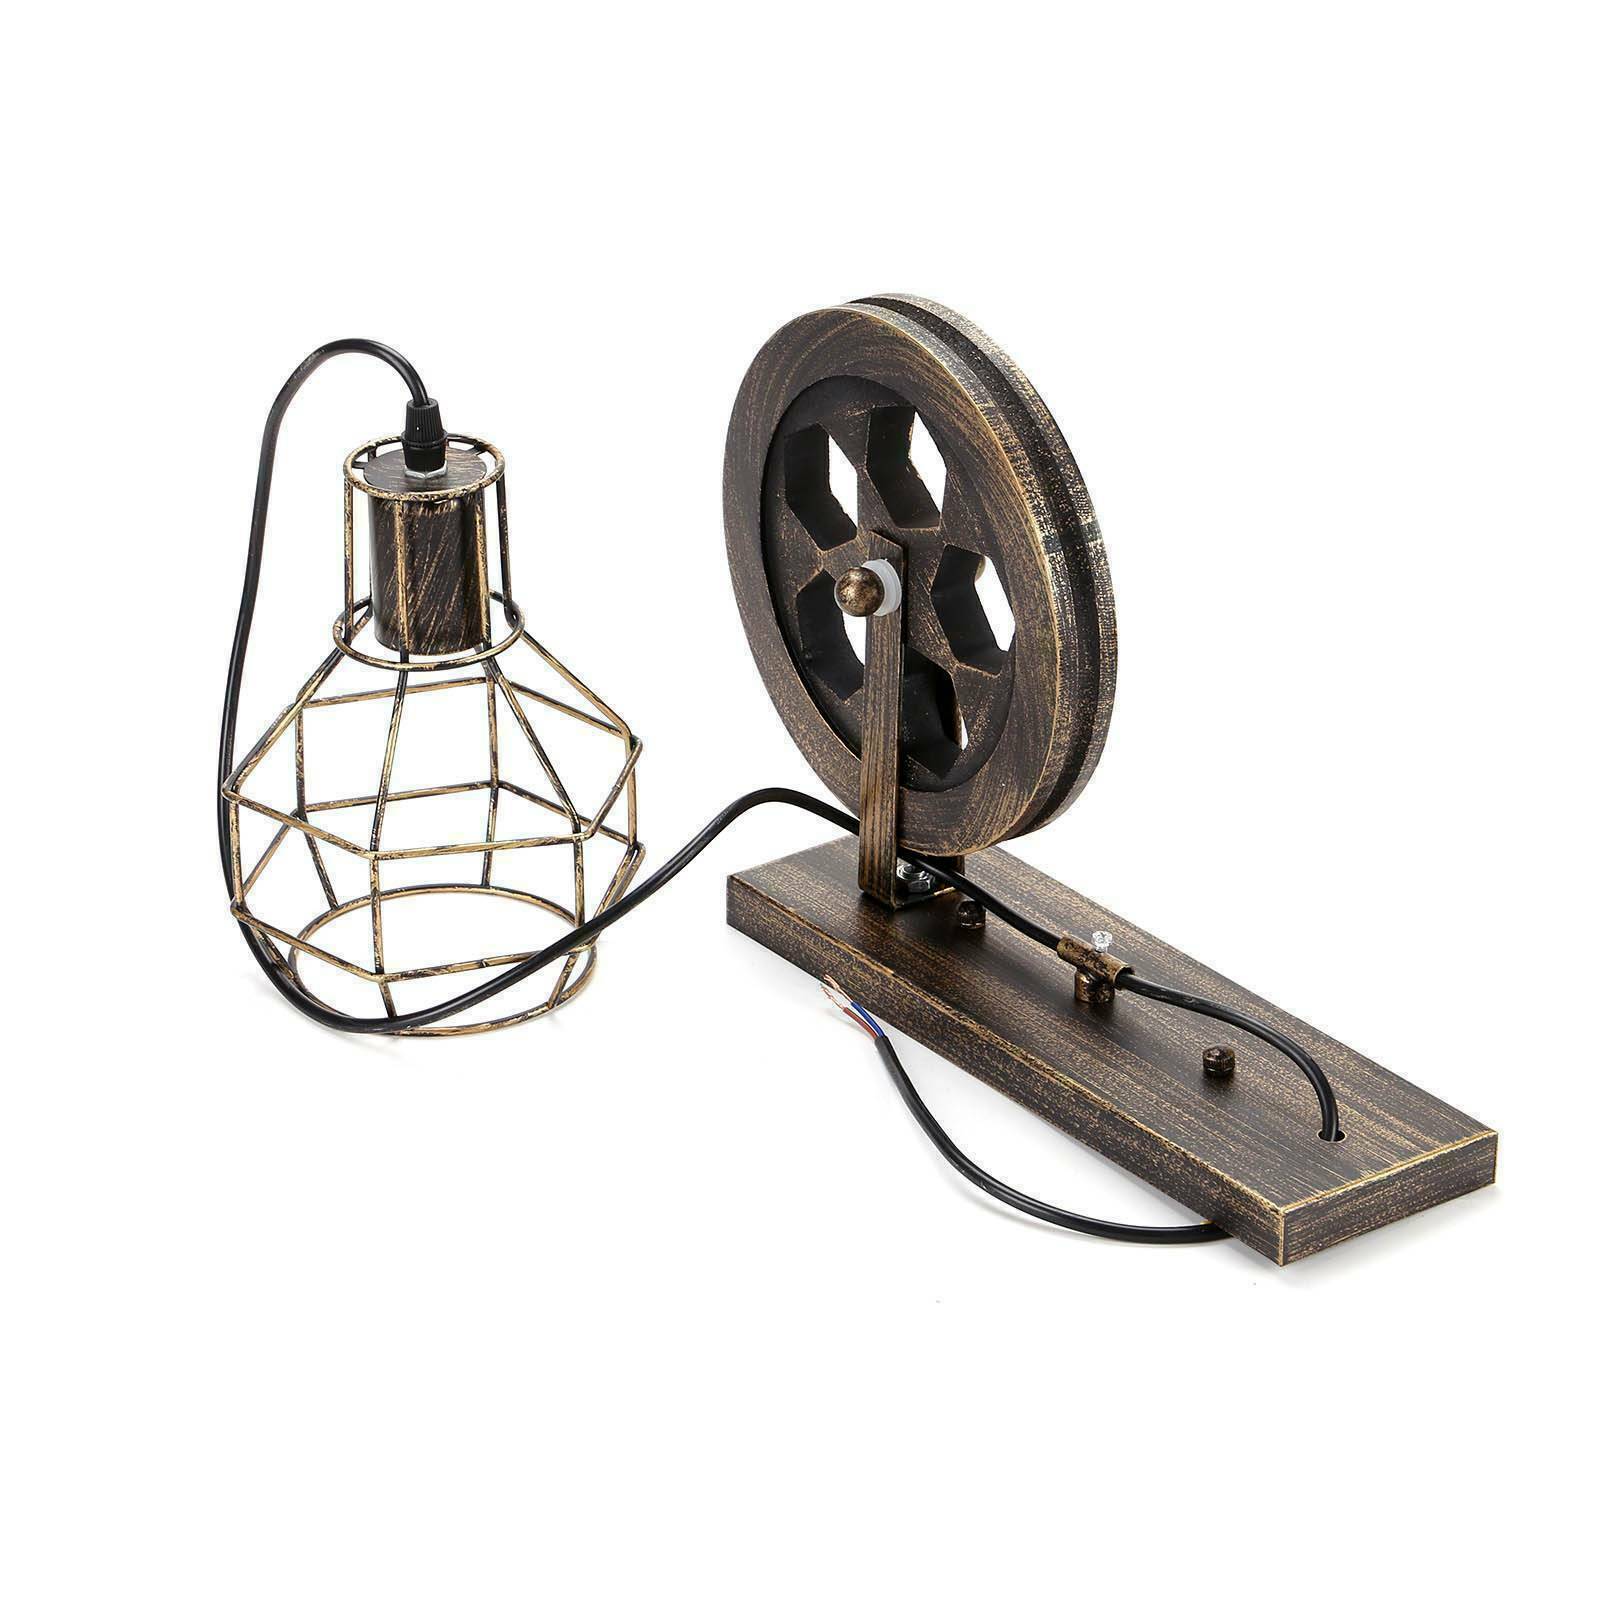 Wandleuchte Retro Rad Licht Rustikale Vintage Pipe Industrial Steampunk Beleuchtung